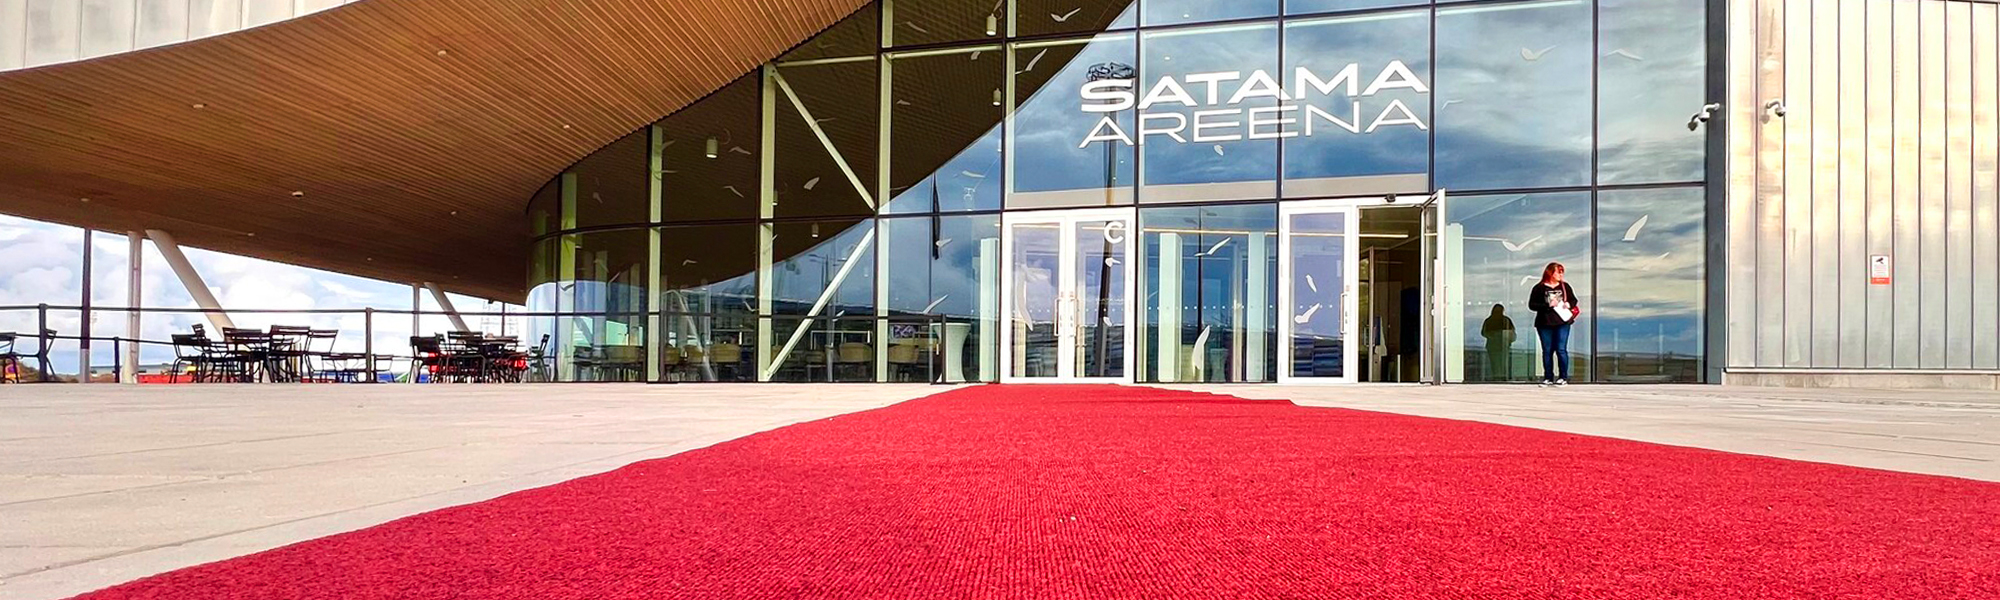 Kuvassa Satama Areenan sisäänkäynti ja punainen matto.